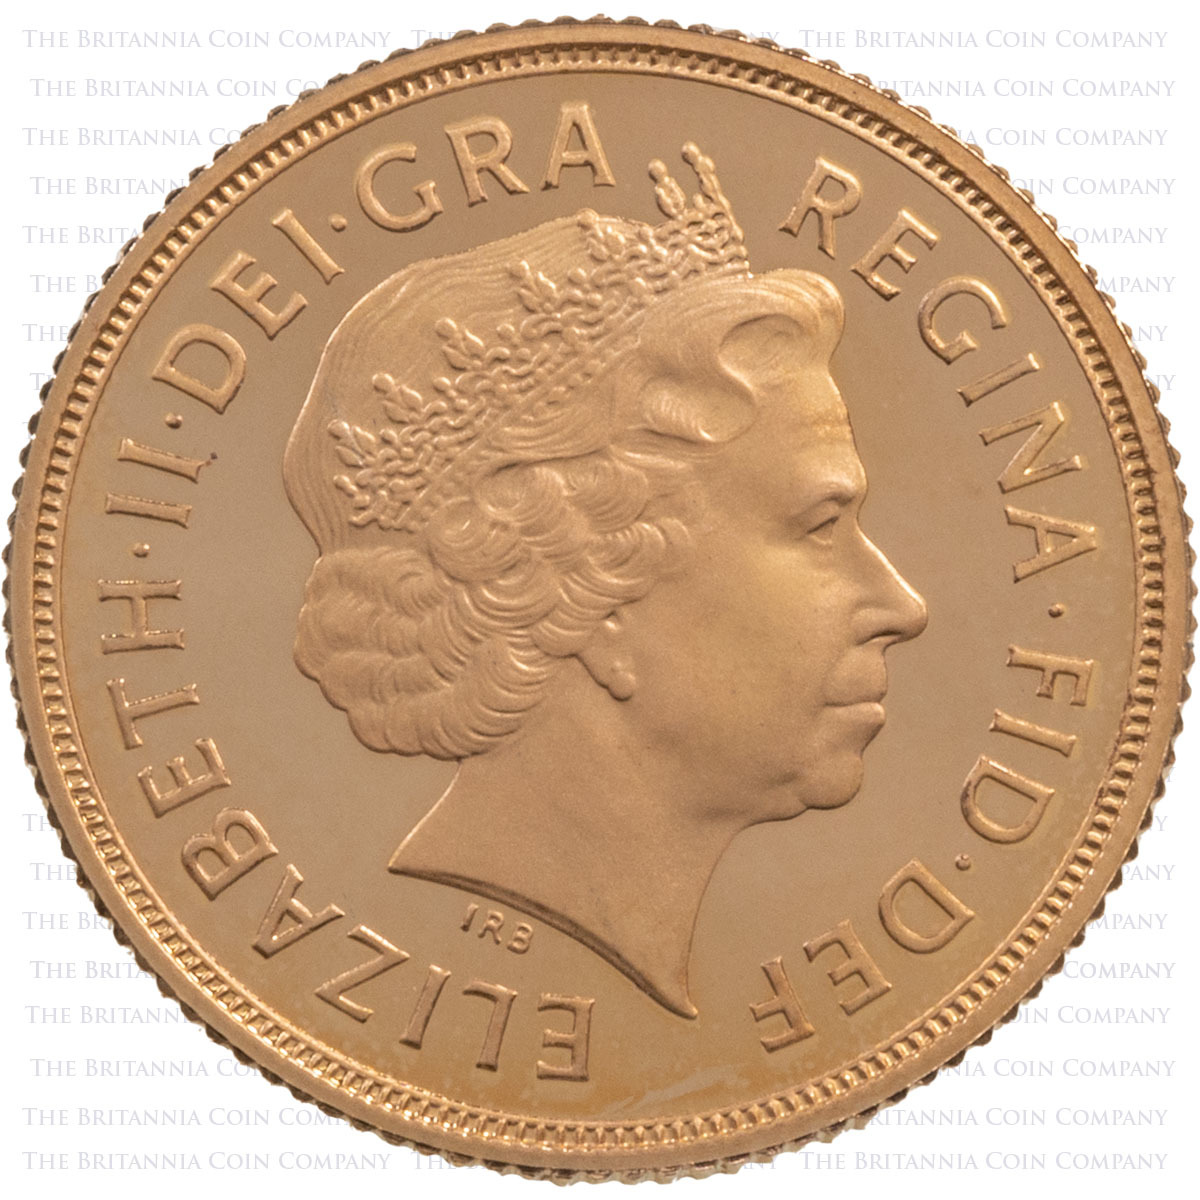 SV05 2005 Elizabeth II Gold Proof Sovereign Obverse